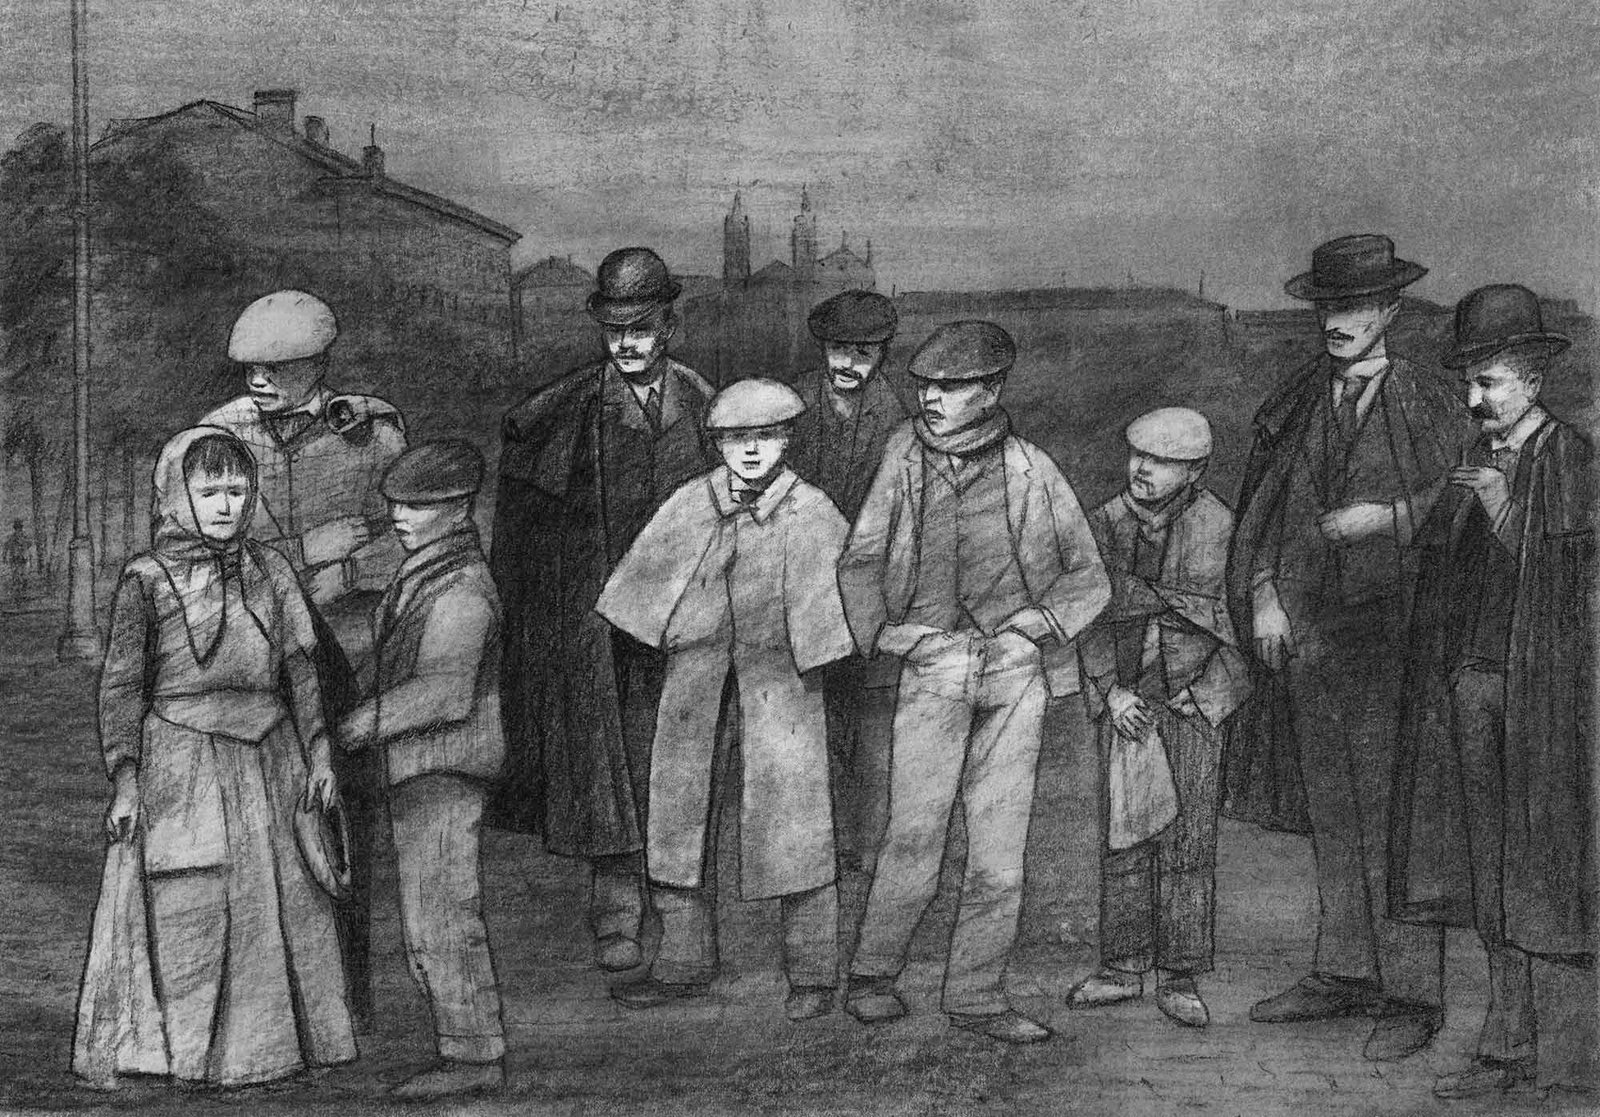 Escena de Madrid, 1905 (Santiago Ramón y Cajal). Fondo: Carrera de San Jerónimo y paseo del Prado, 1900 (autor desconocido). Charcoal on paper, by Mario Jodra.